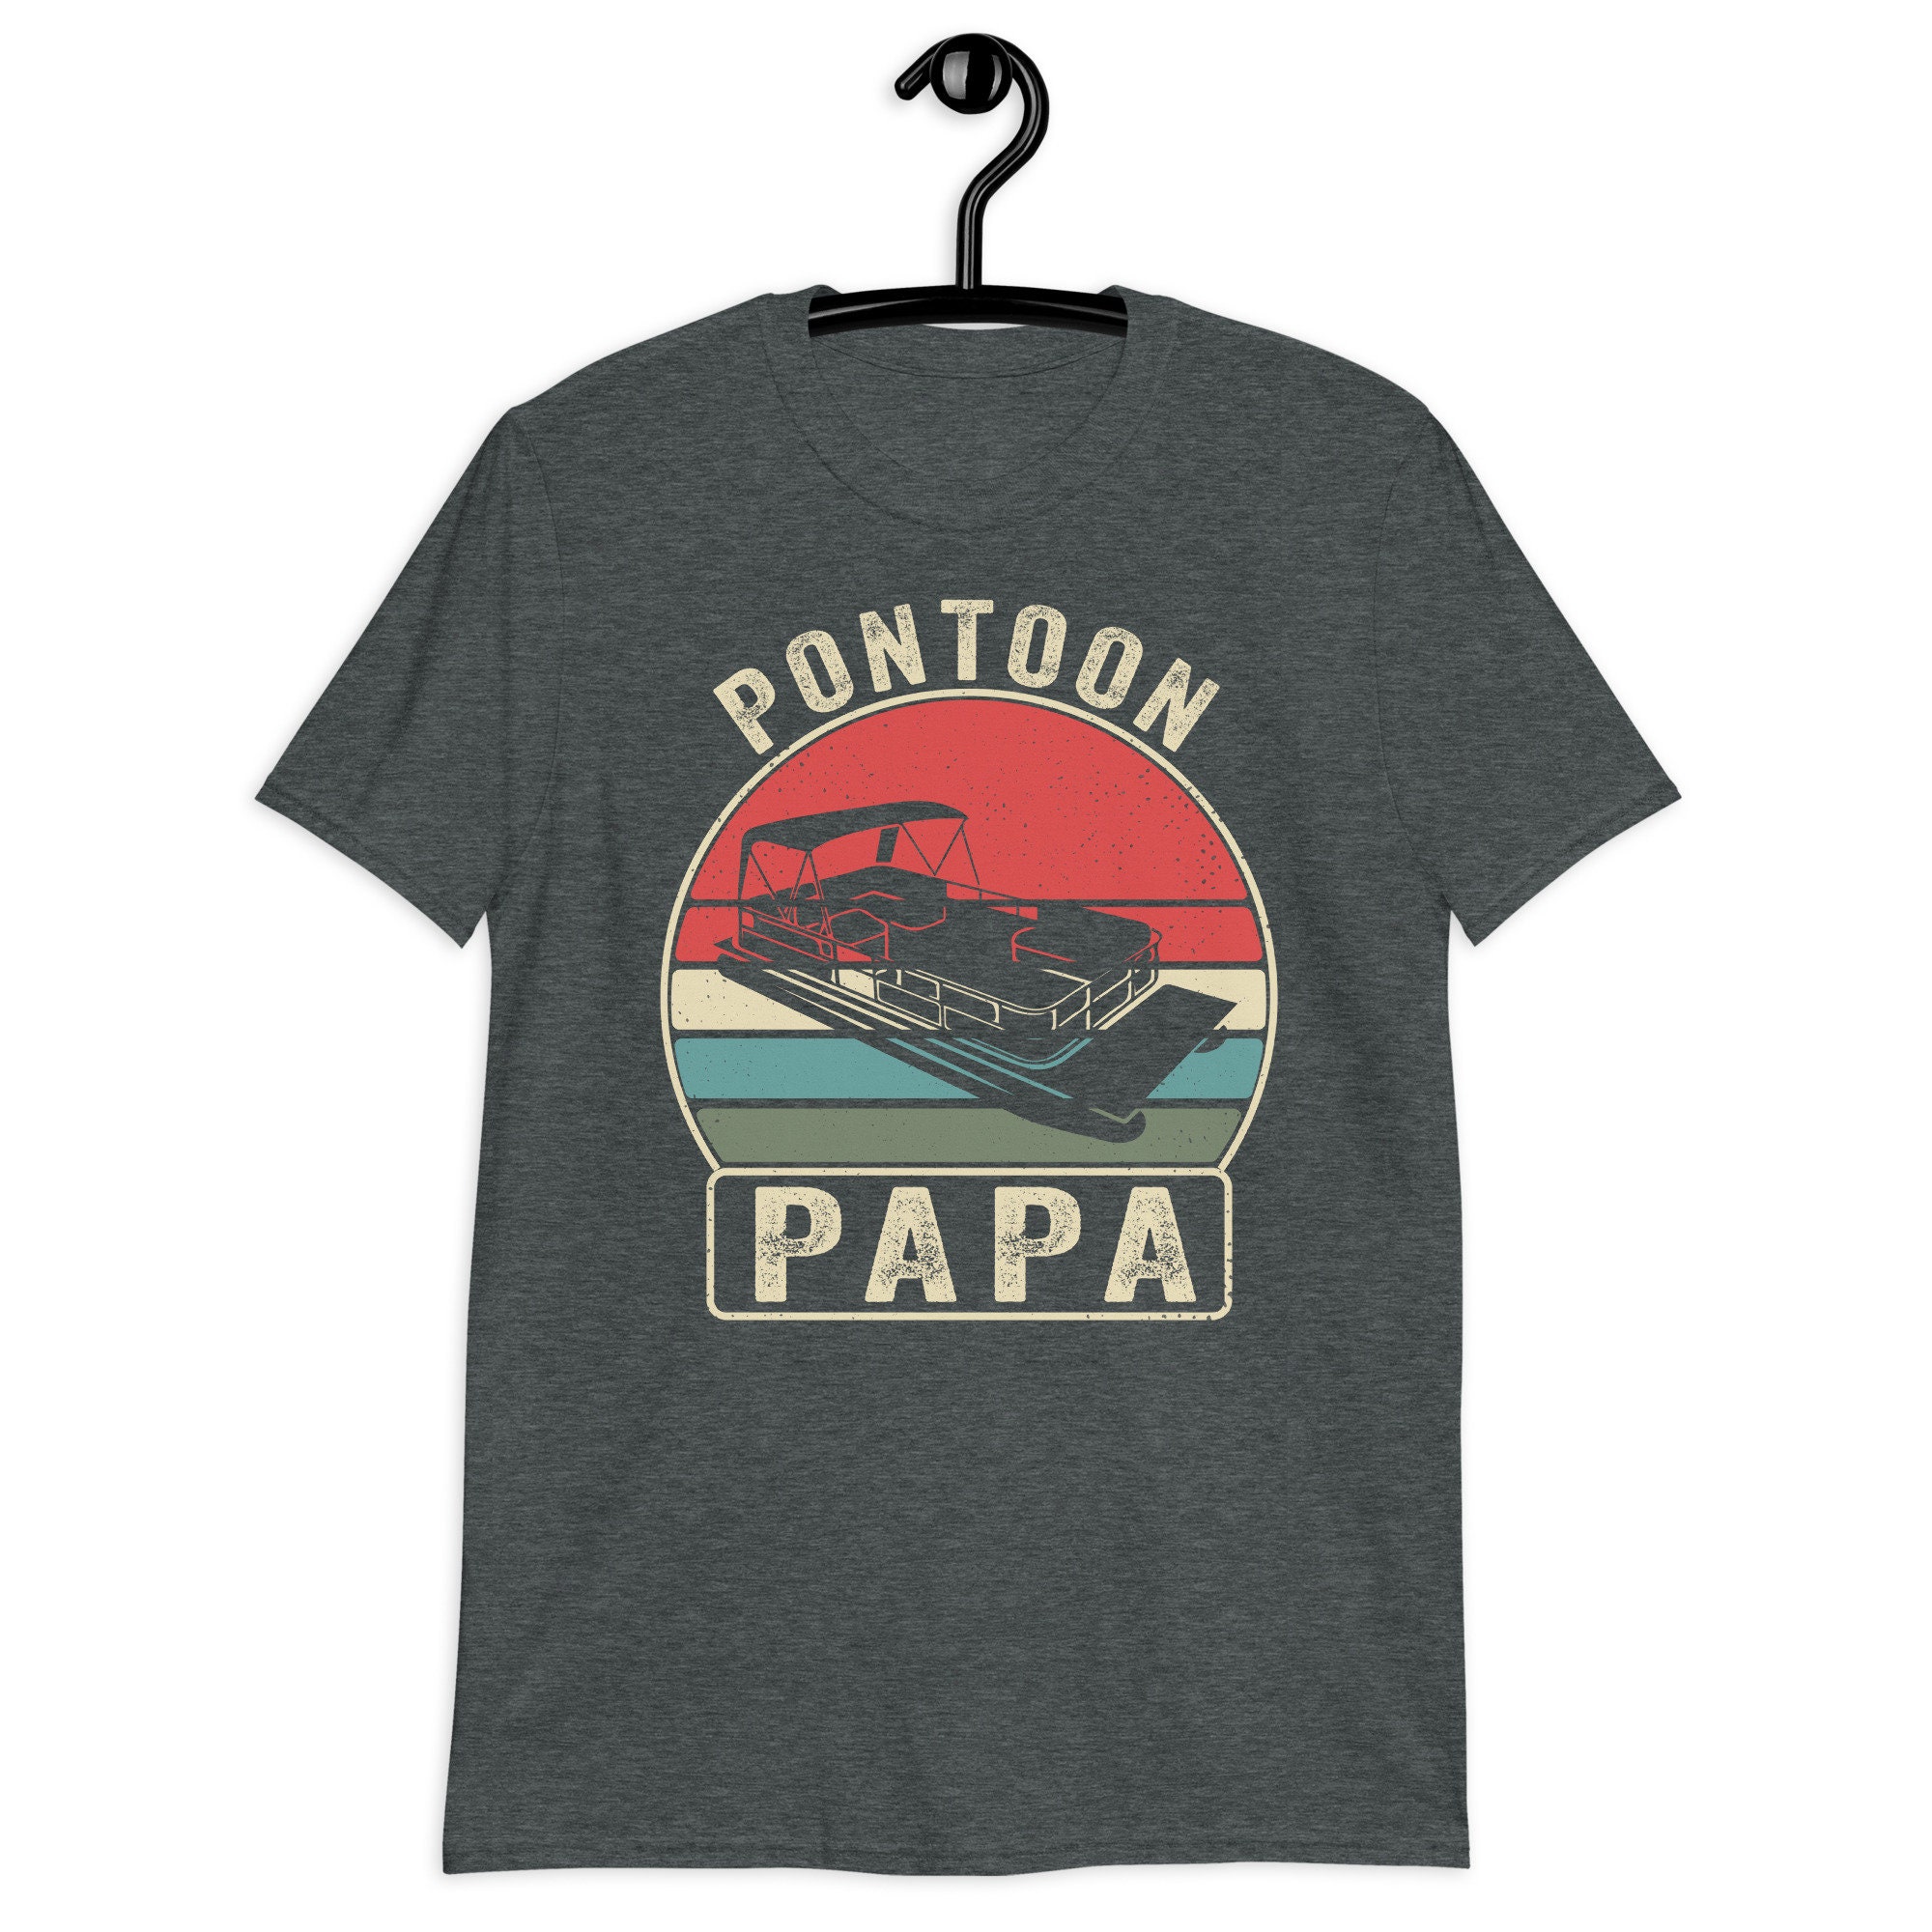 Pontoon papa shirt for sale  